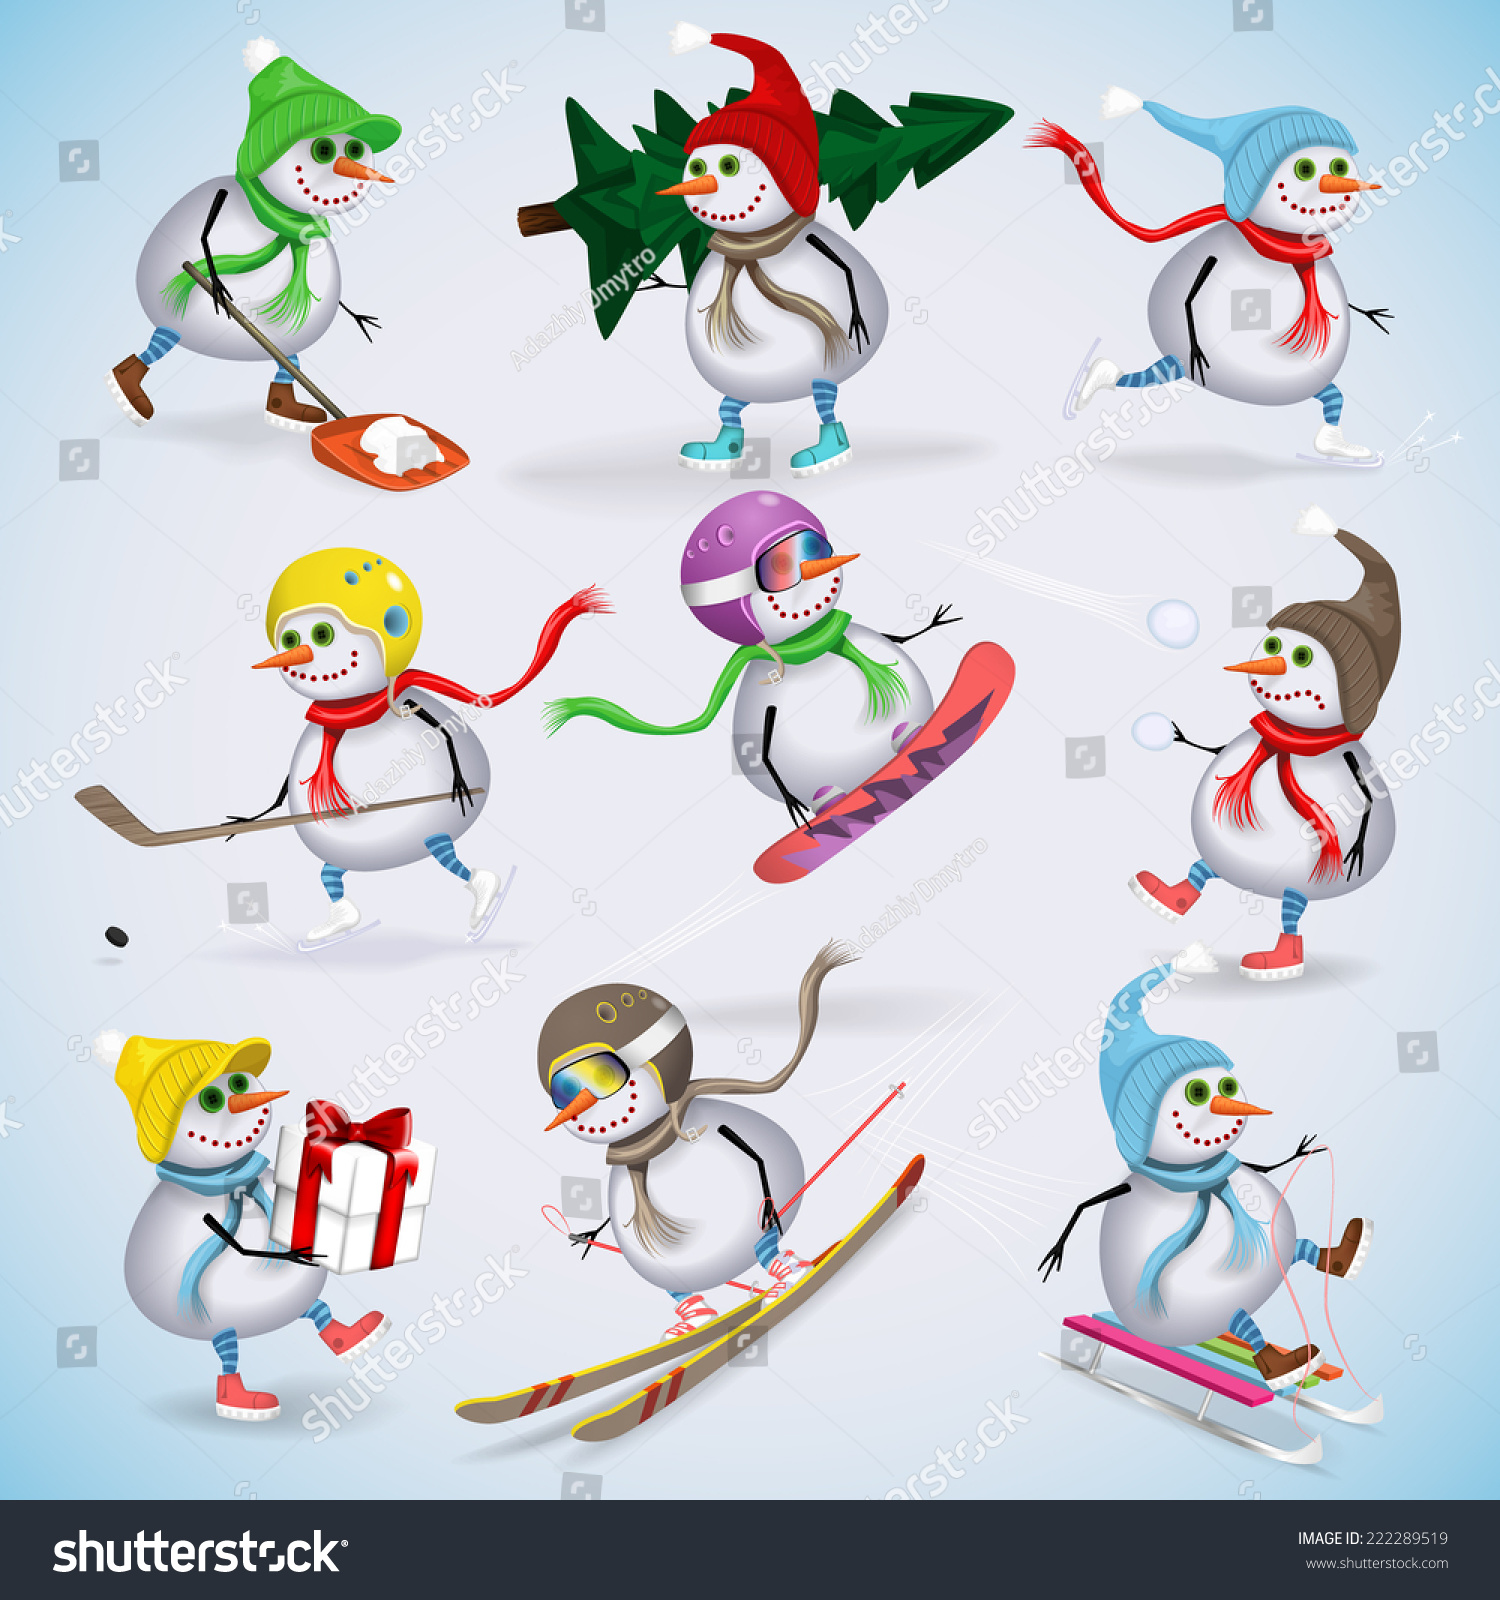 Снеговики в разных видах спорта